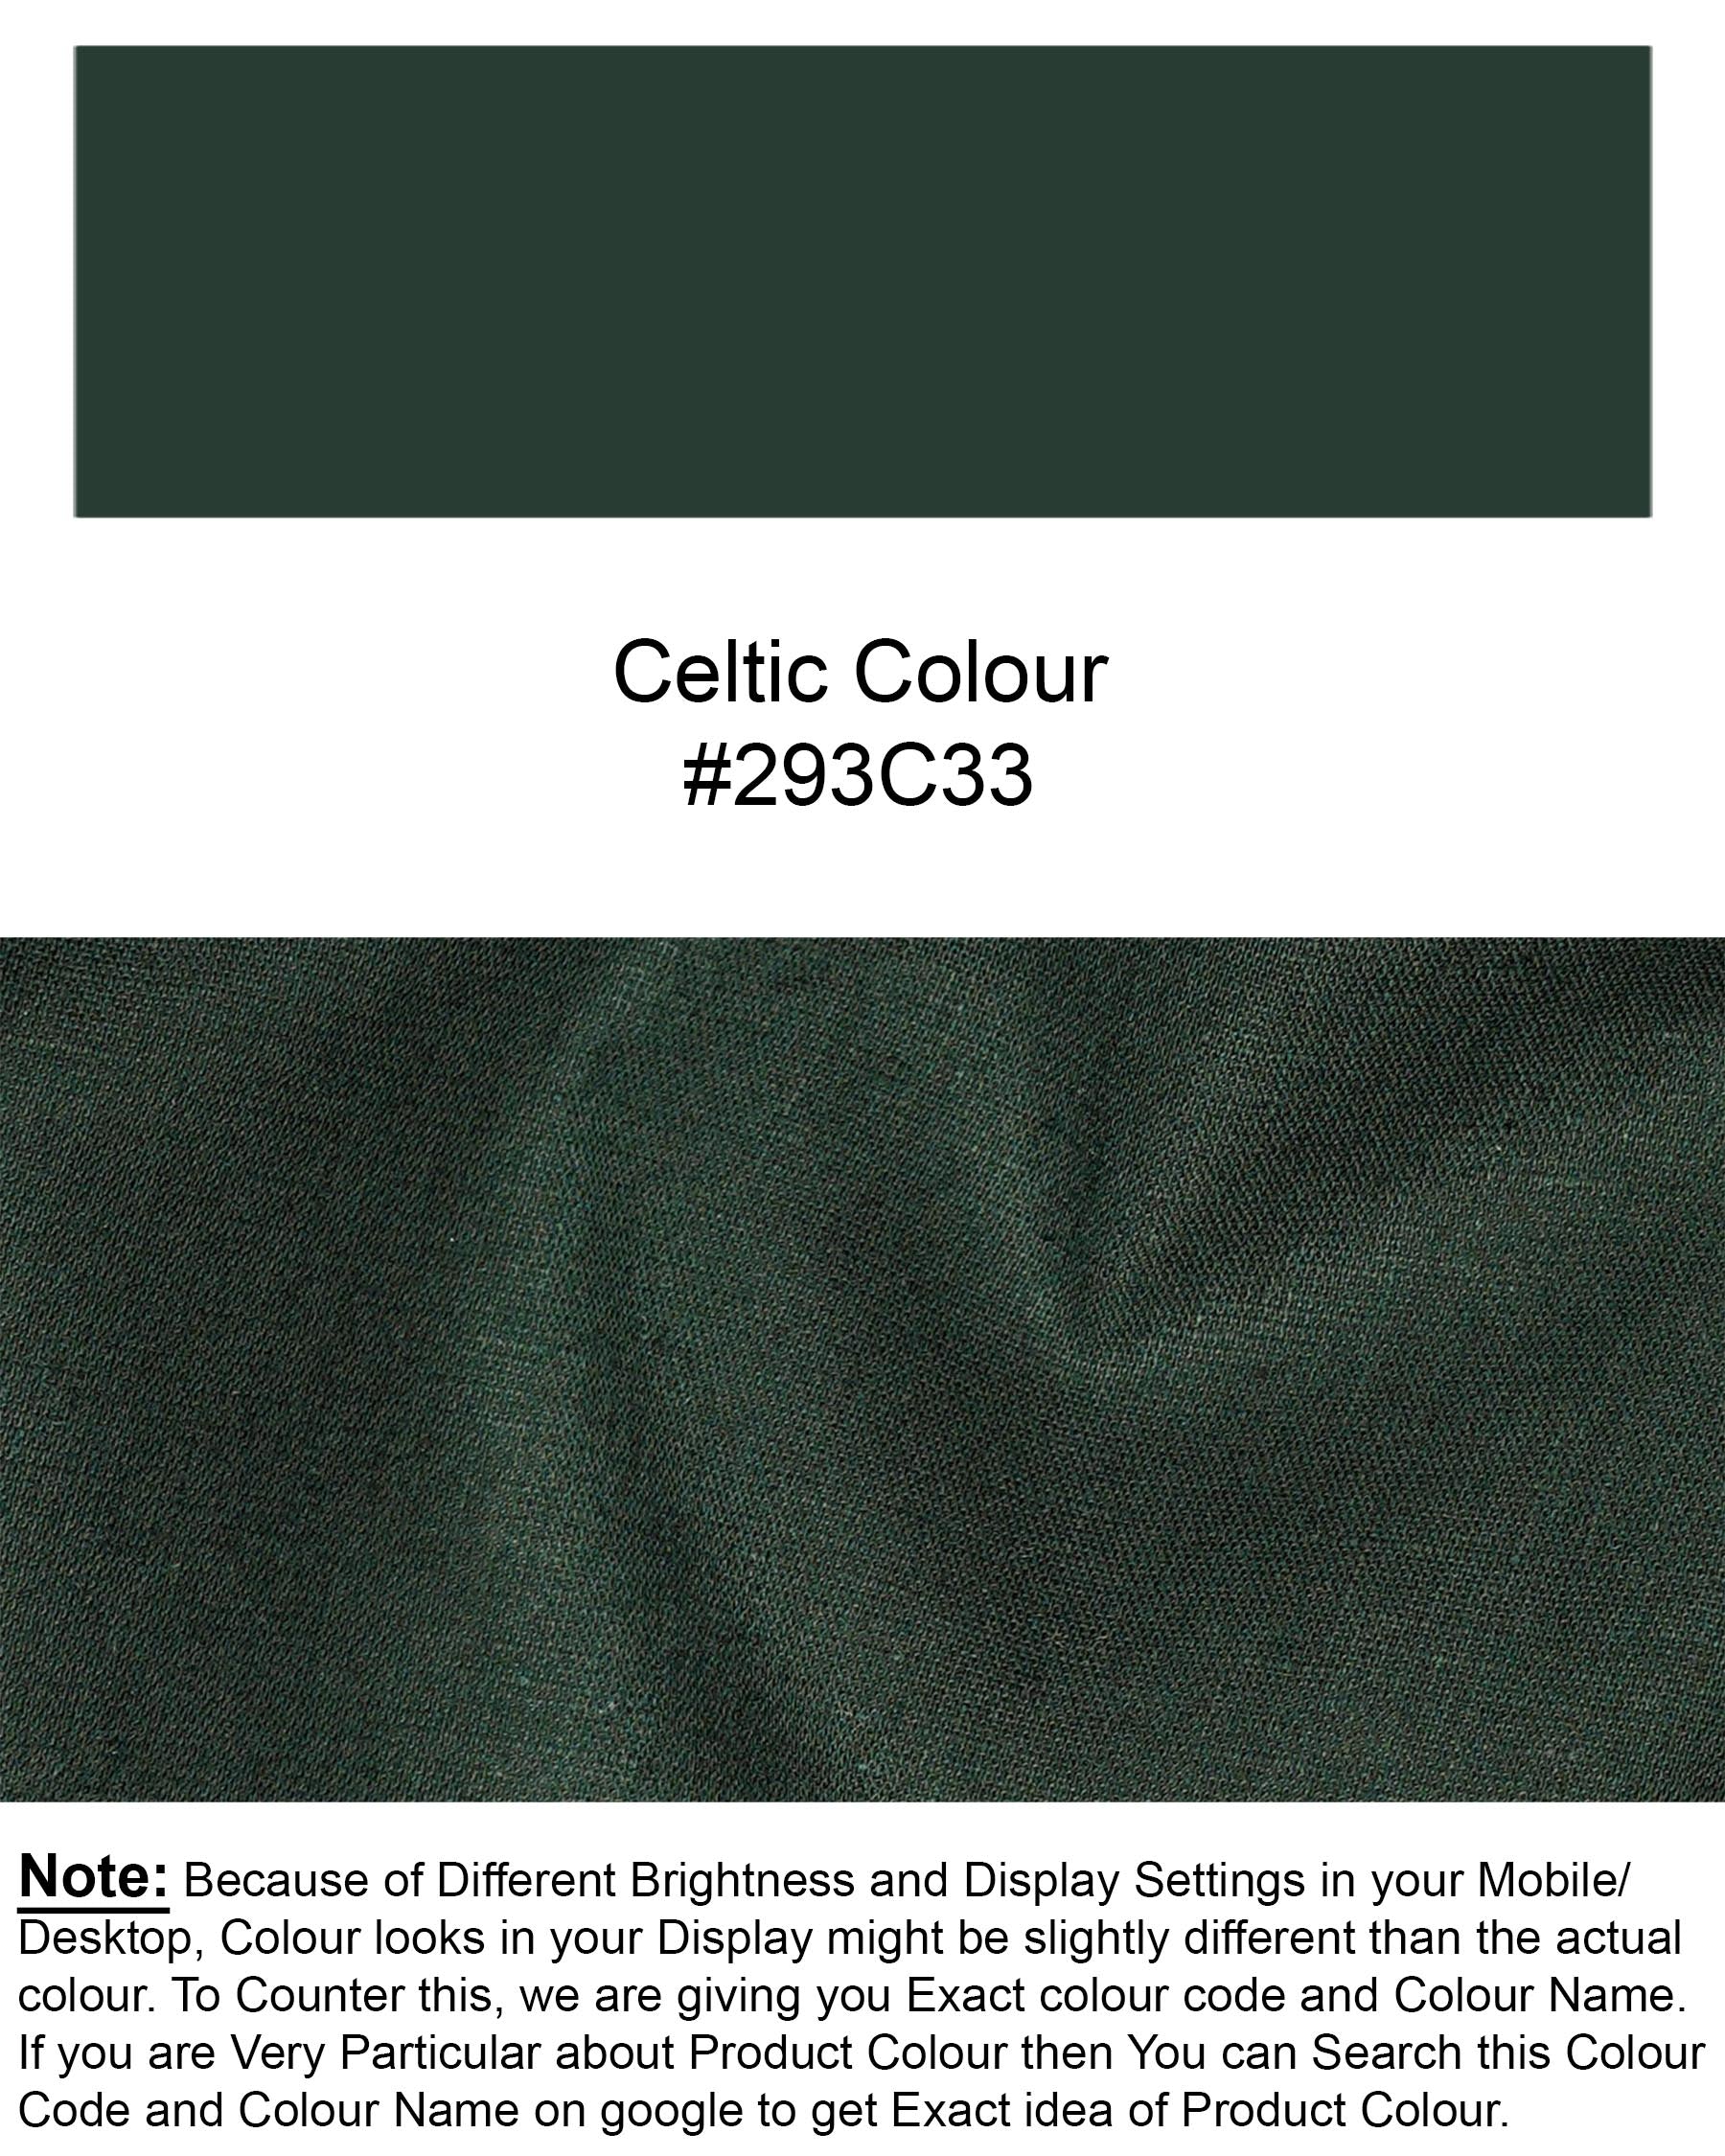 Celtic Green Luxurious Linen Shirt 7257-M-GR-P-38, 7257-M-GR-P-H-38, 7257-M-GR-P-39, 7257-M-GR-P-H-39, 7257-M-GR-P-40, 7257-M-GR-P-H-40, 7257-M-GR-P-42, 7257-M-GR-P-H-42, 7257-M-GR-P-44, 7257-M-GR-P-H-44, 7257-M-GR-P-46, 7257-M-GR-P-H-46, 7257-M-GR-P-48, 7257-M-GR-P-H-48, 7257-M-GR-P-50, 7257-M-GR-P-H-50, 7257-M-GR-P-52, 7257-M-GR-P-H-52